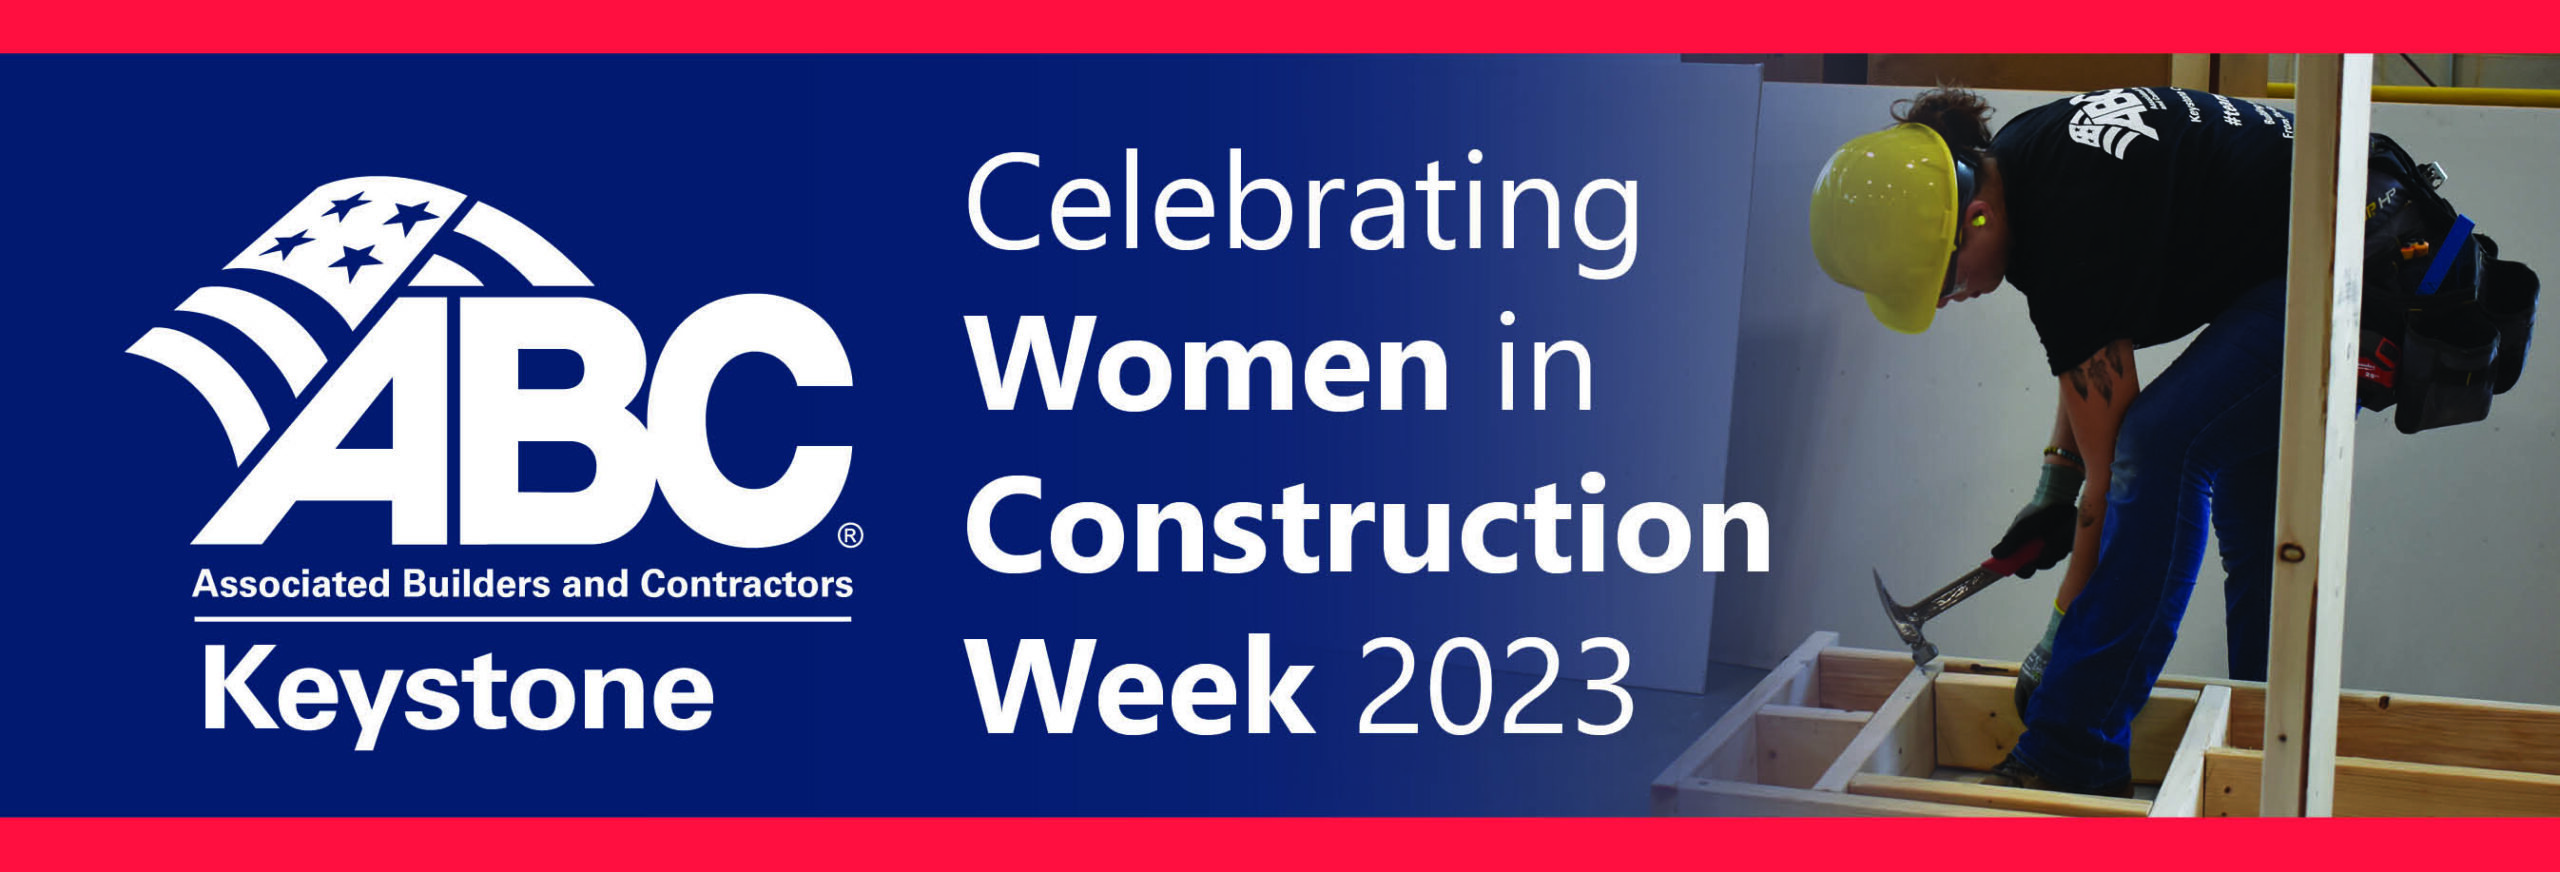 Women_in_Construction_Week_2023